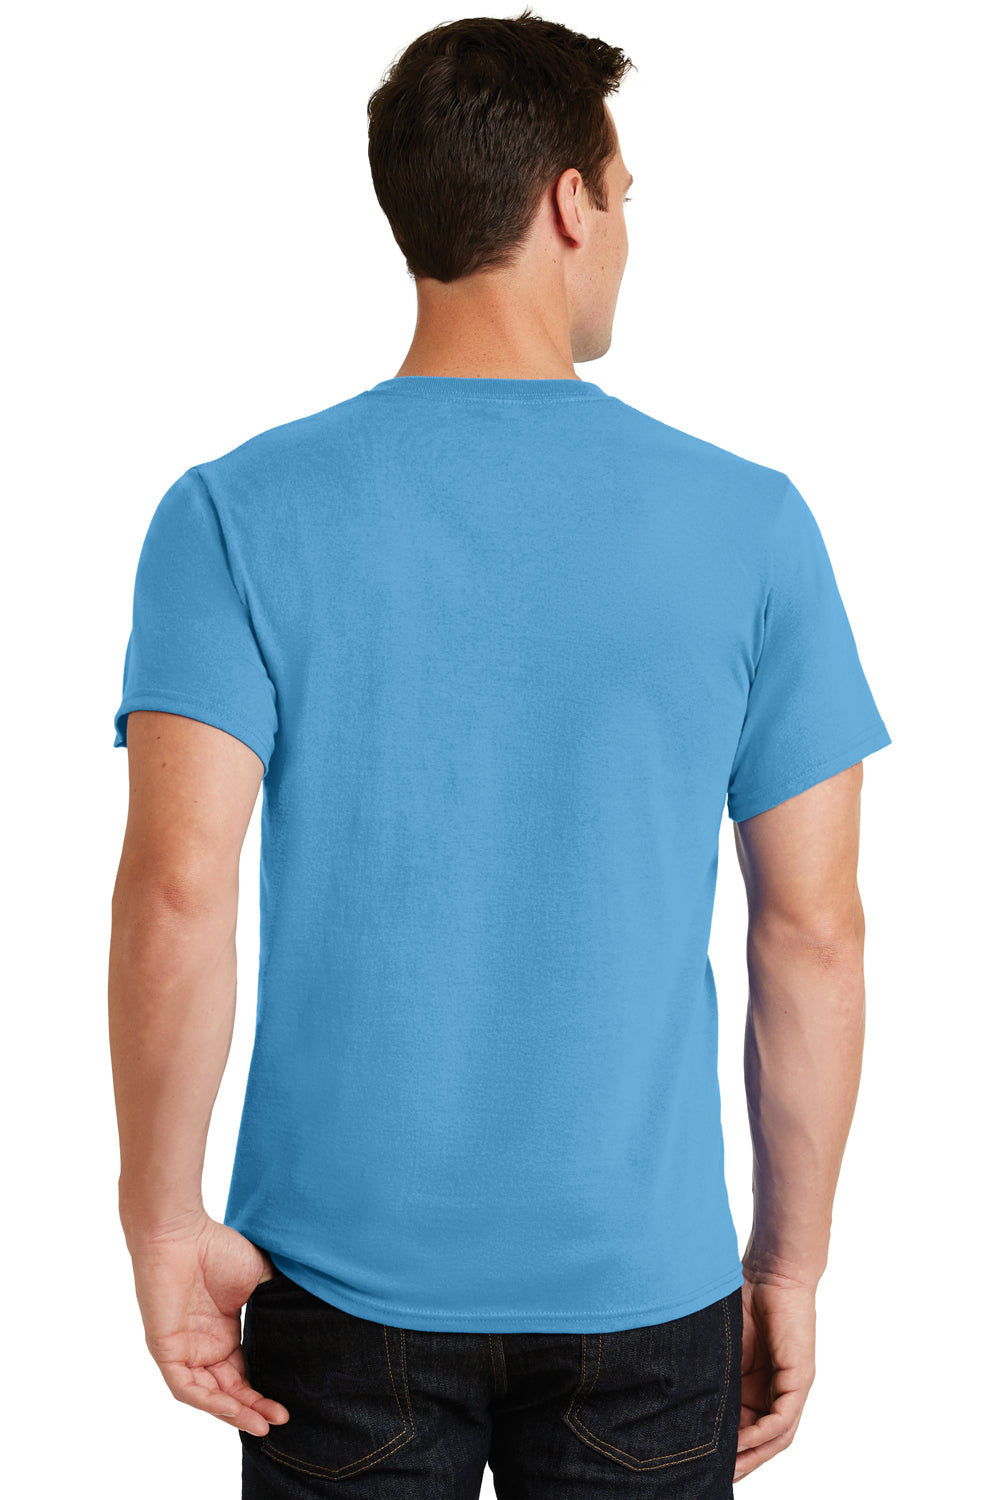 Port & Company PC61 Mens Essential Short Sleeve Crewneck T-Shirt Aqua Blue Back